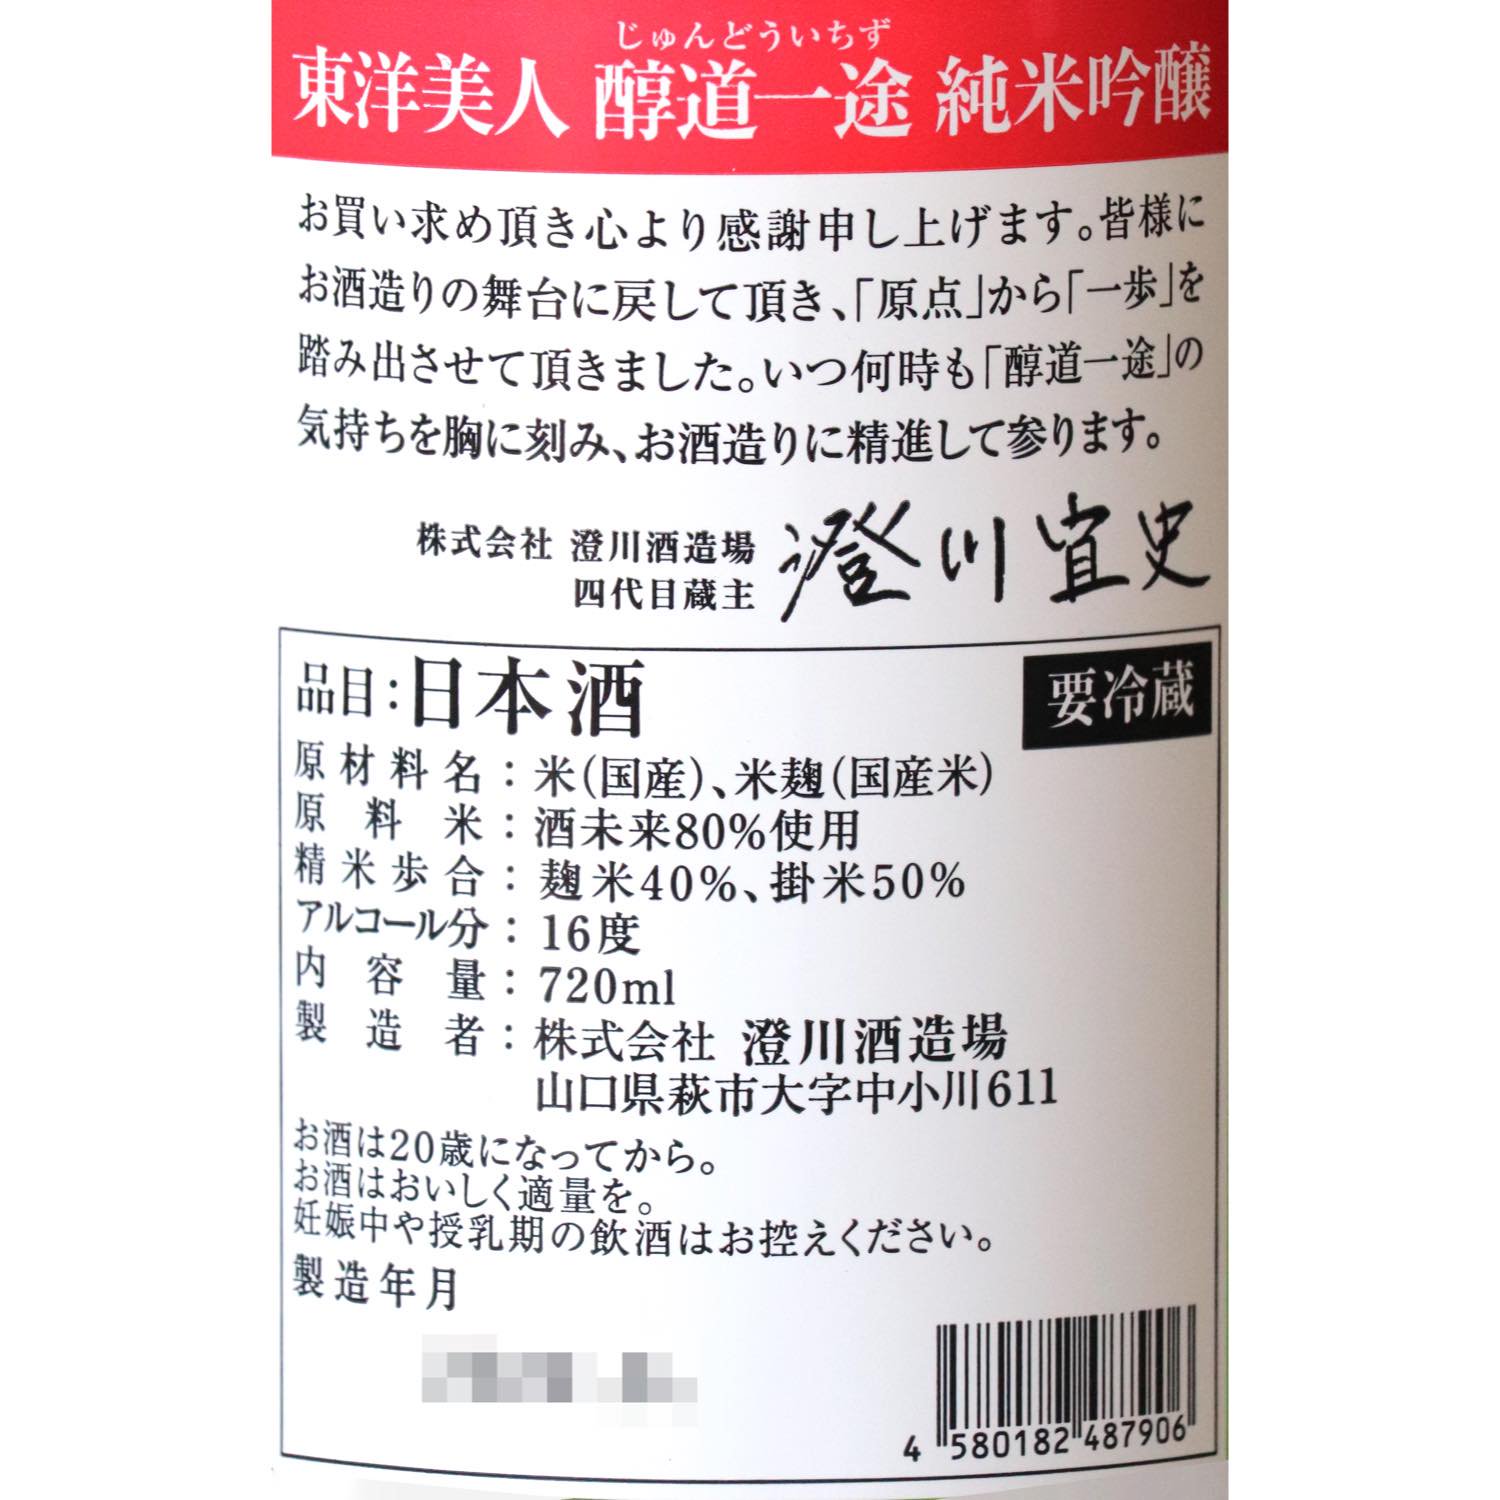 東洋美人 醇道一途(じゅんどういちず) 限定純米吟醸 酒未来 720ml